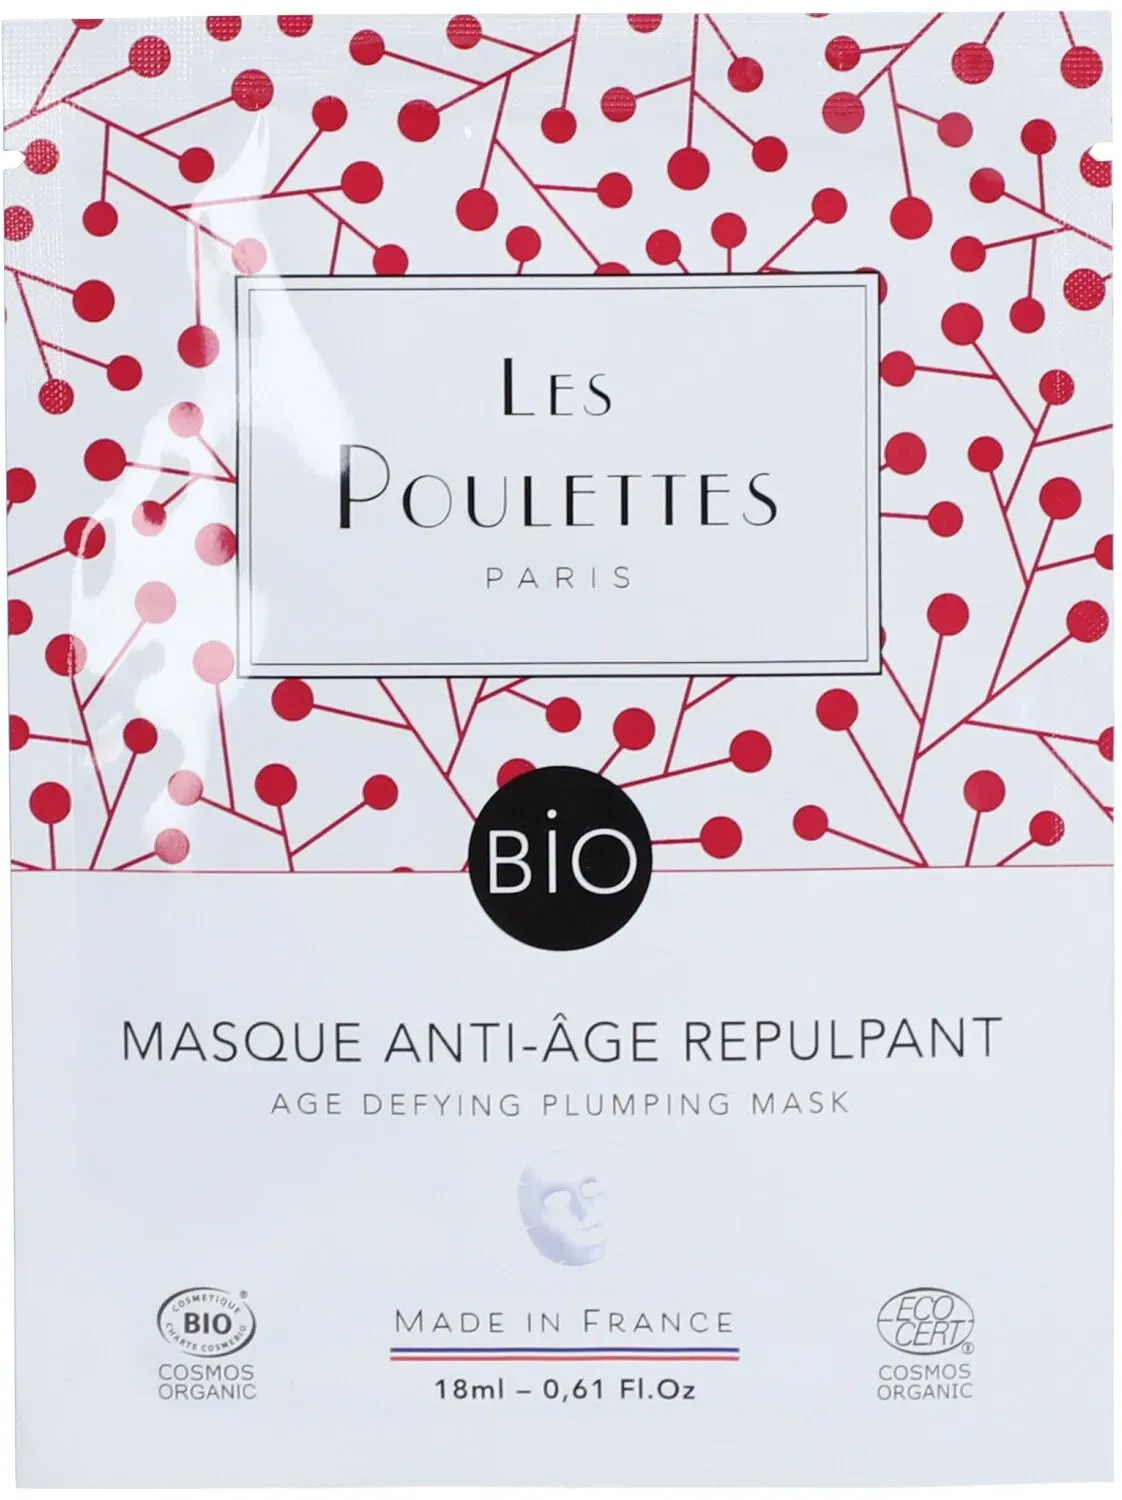 Les Poulettes Paris Masque Anti-Âge Repulpant Bio 18 ml masque(s) pour le visage